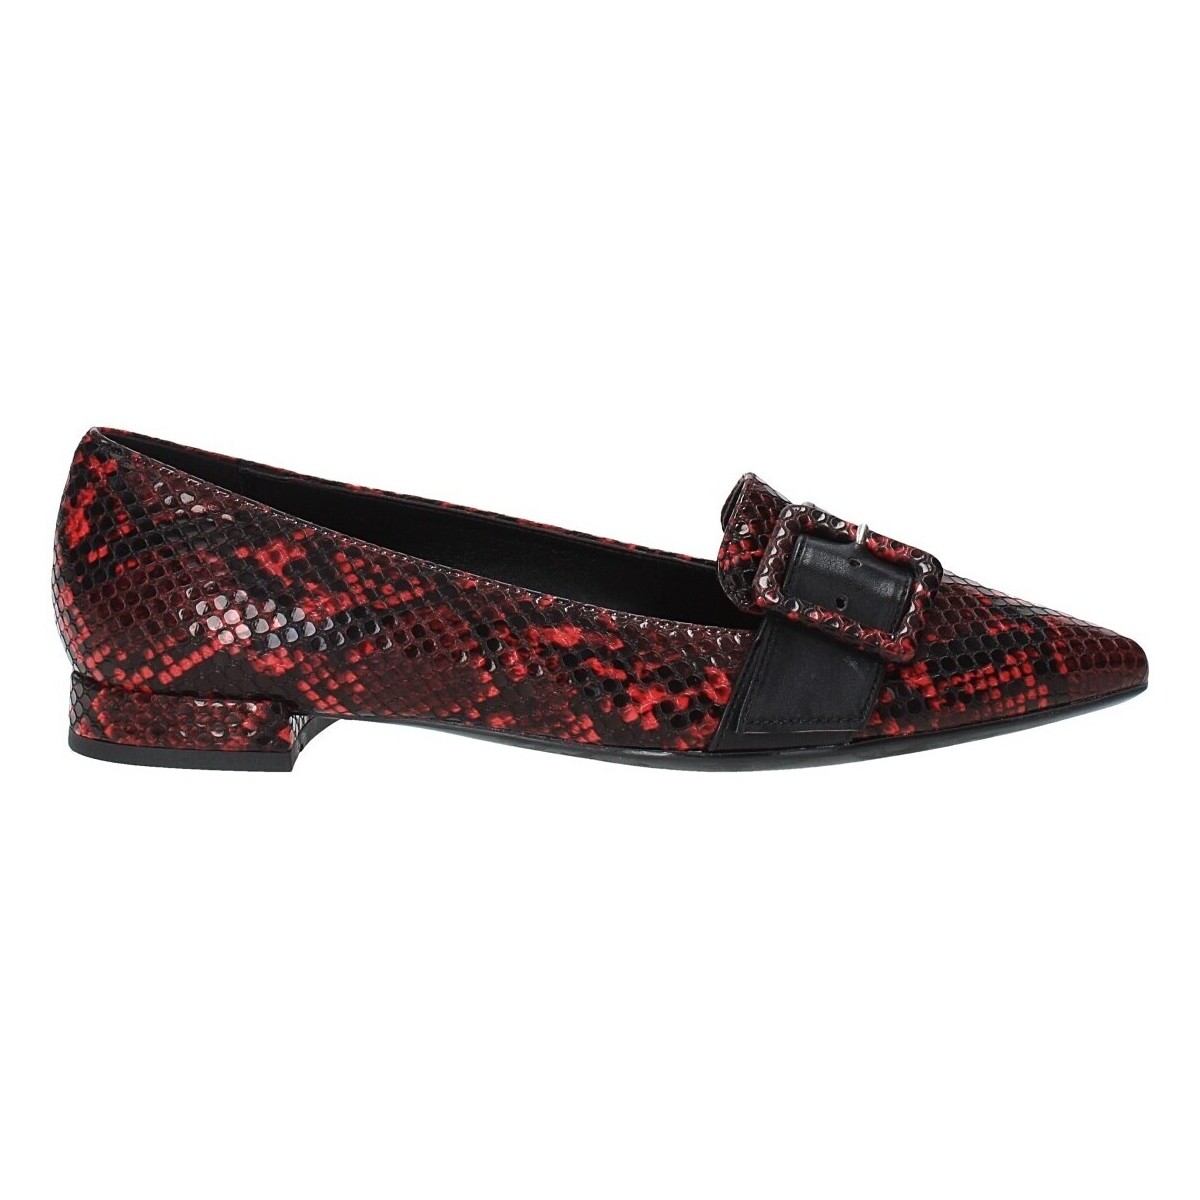 Scarpe Donna Mocassini Grace Shoes 521T110 Bordeaux